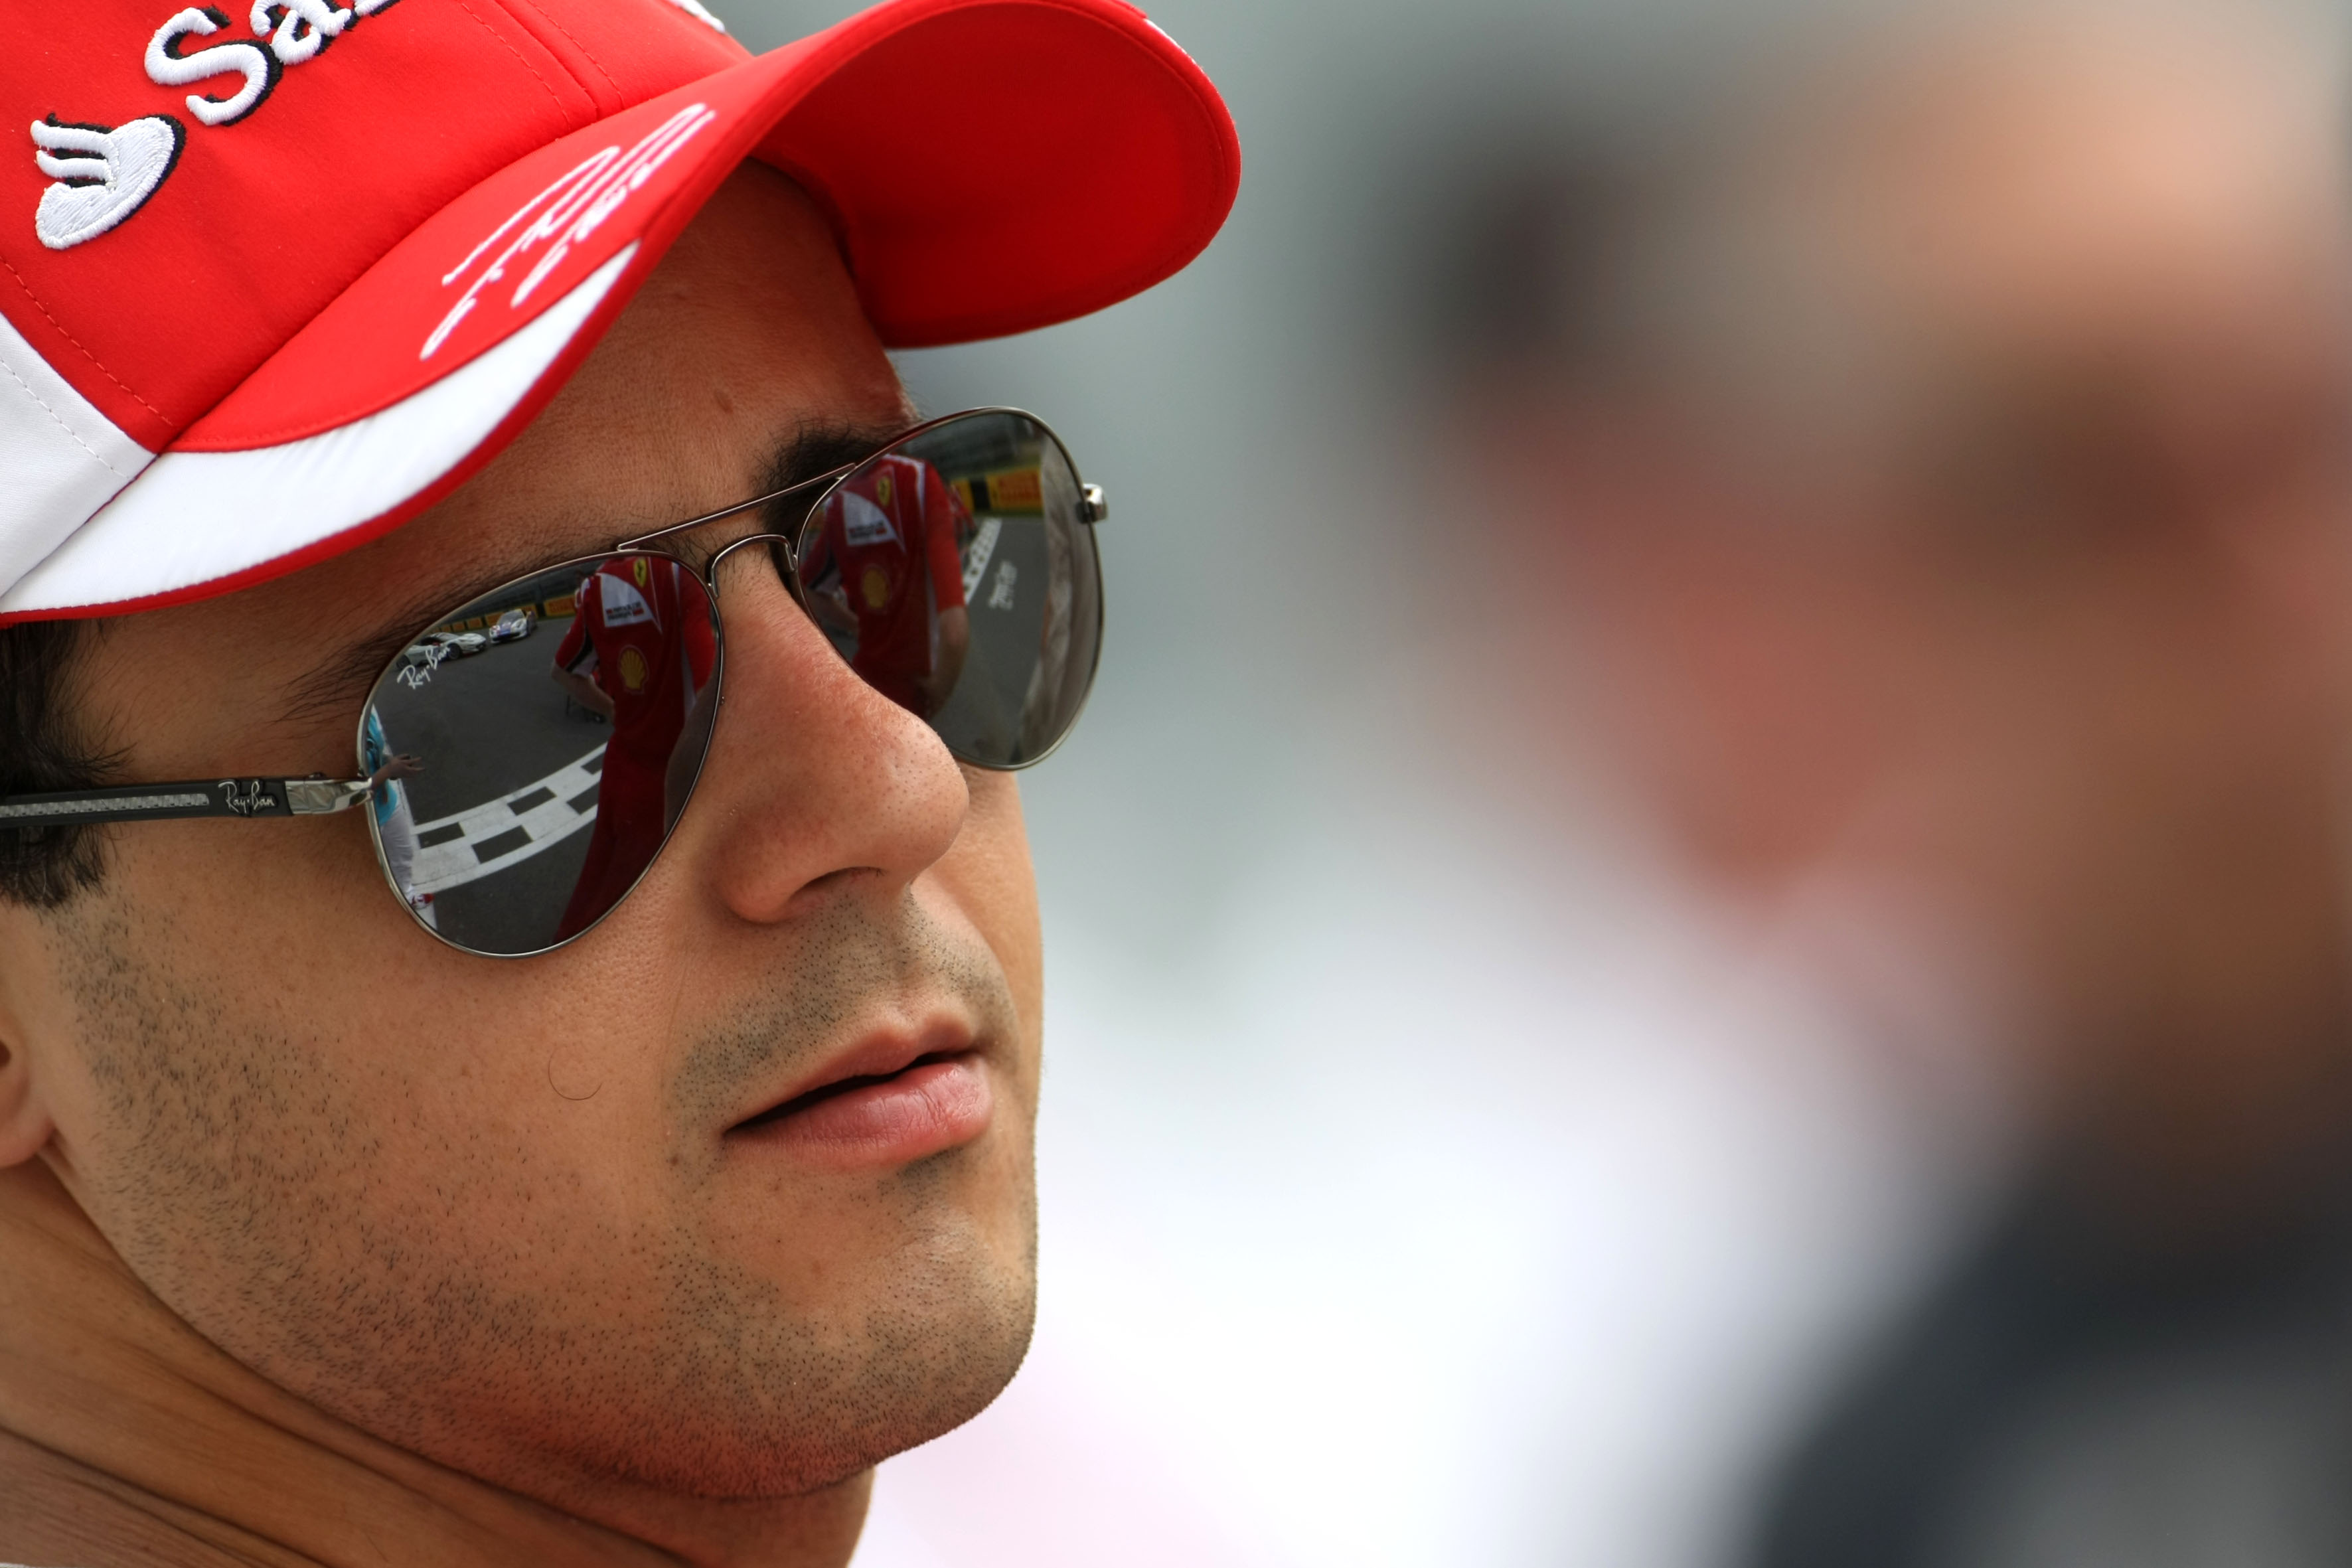 Di Montezemolo herhaalt: ‘Massa blijft bij Ferrari’